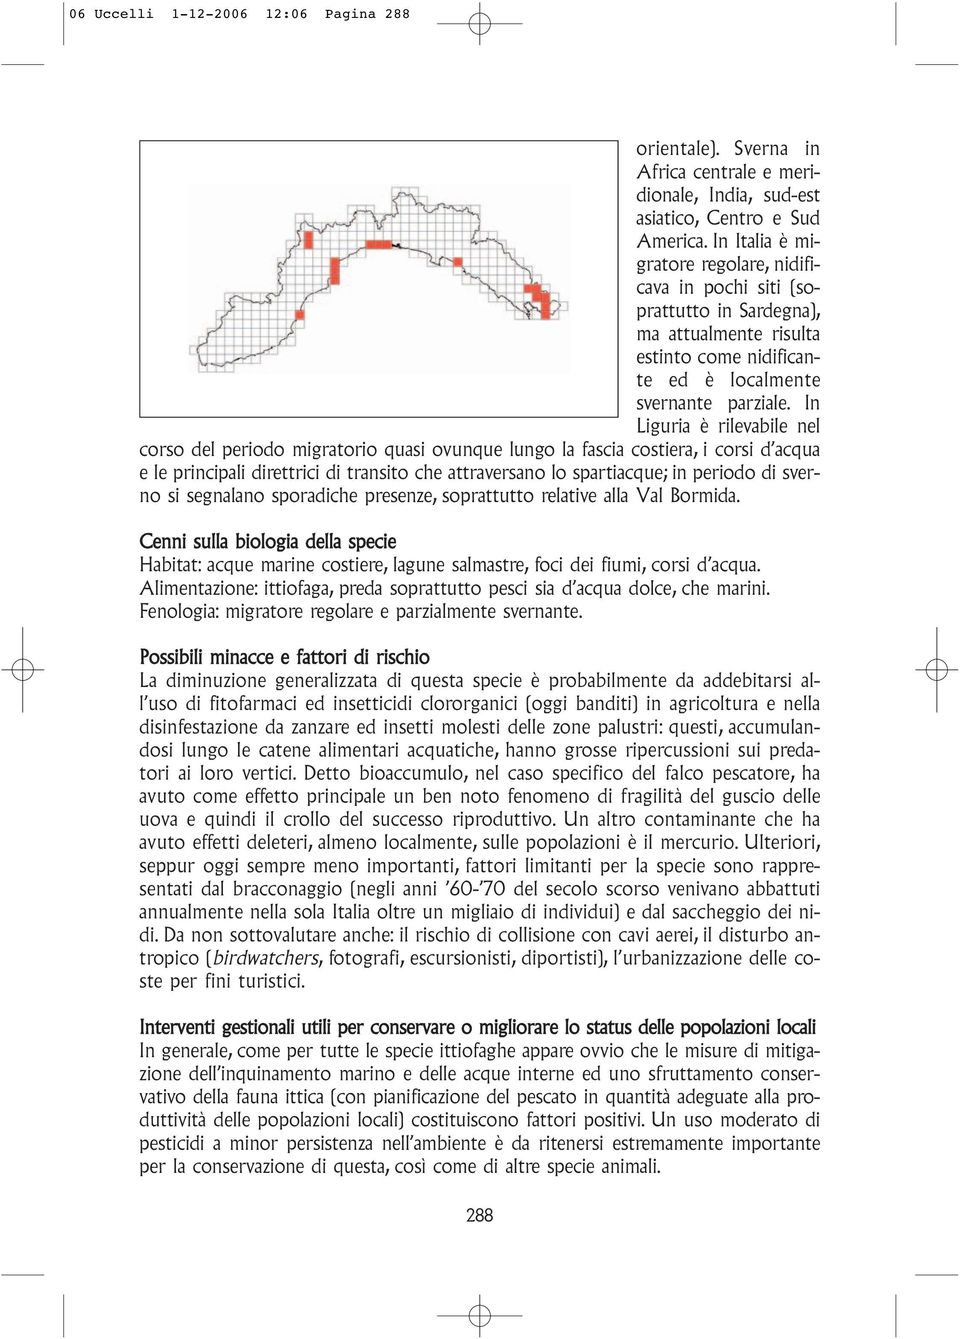 In Liguria è rilevabile nel corso del periodo migratorio quasi ovunque lungo la fascia costiera, i corsi d acqua e le principali direttrici di transito che attraversano lo spartiacque; in periodo di